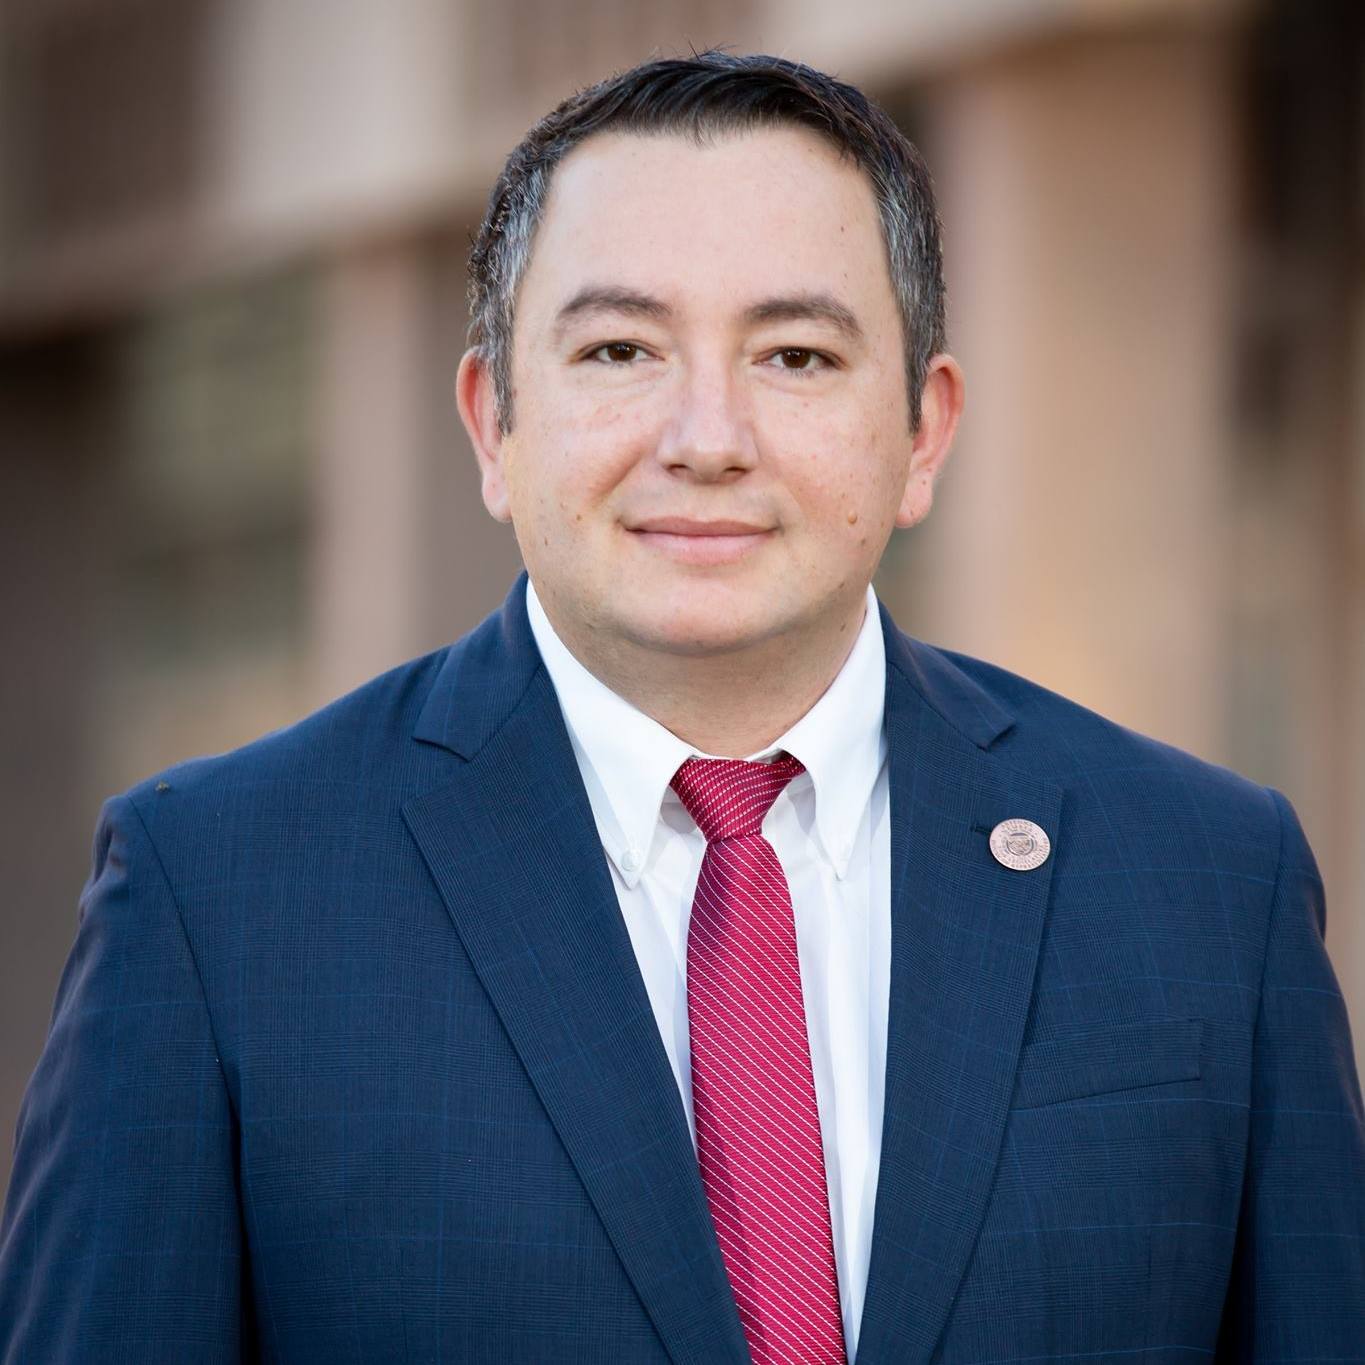 Un român este investit președinte al Camerei Reprezentanților din Arizona, SUA! Cine este Ben Toma